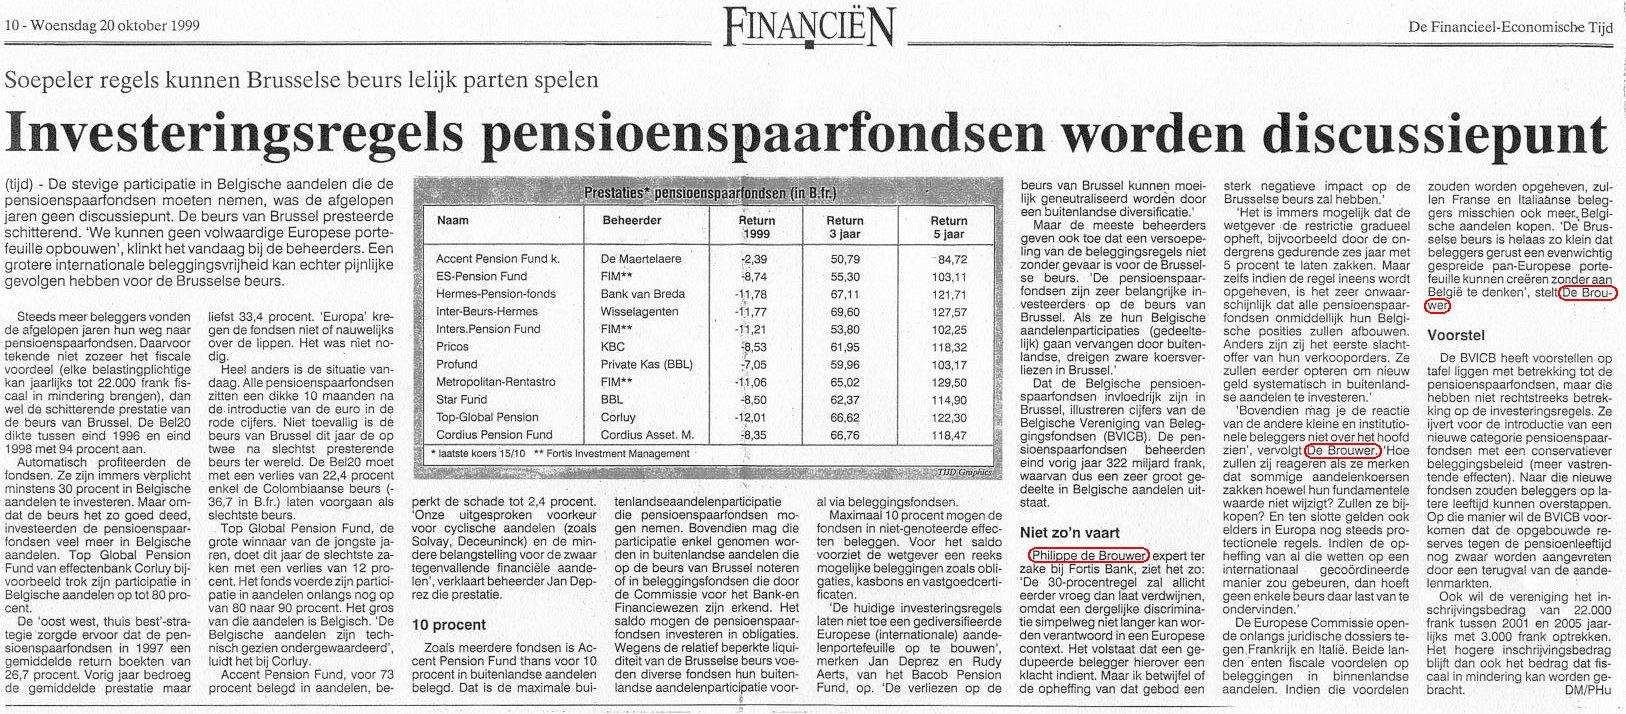 36 De Tijd - 19991020 Investeringsregels pensioenspaarfondsen worden discussiepunt: just a small citation in an